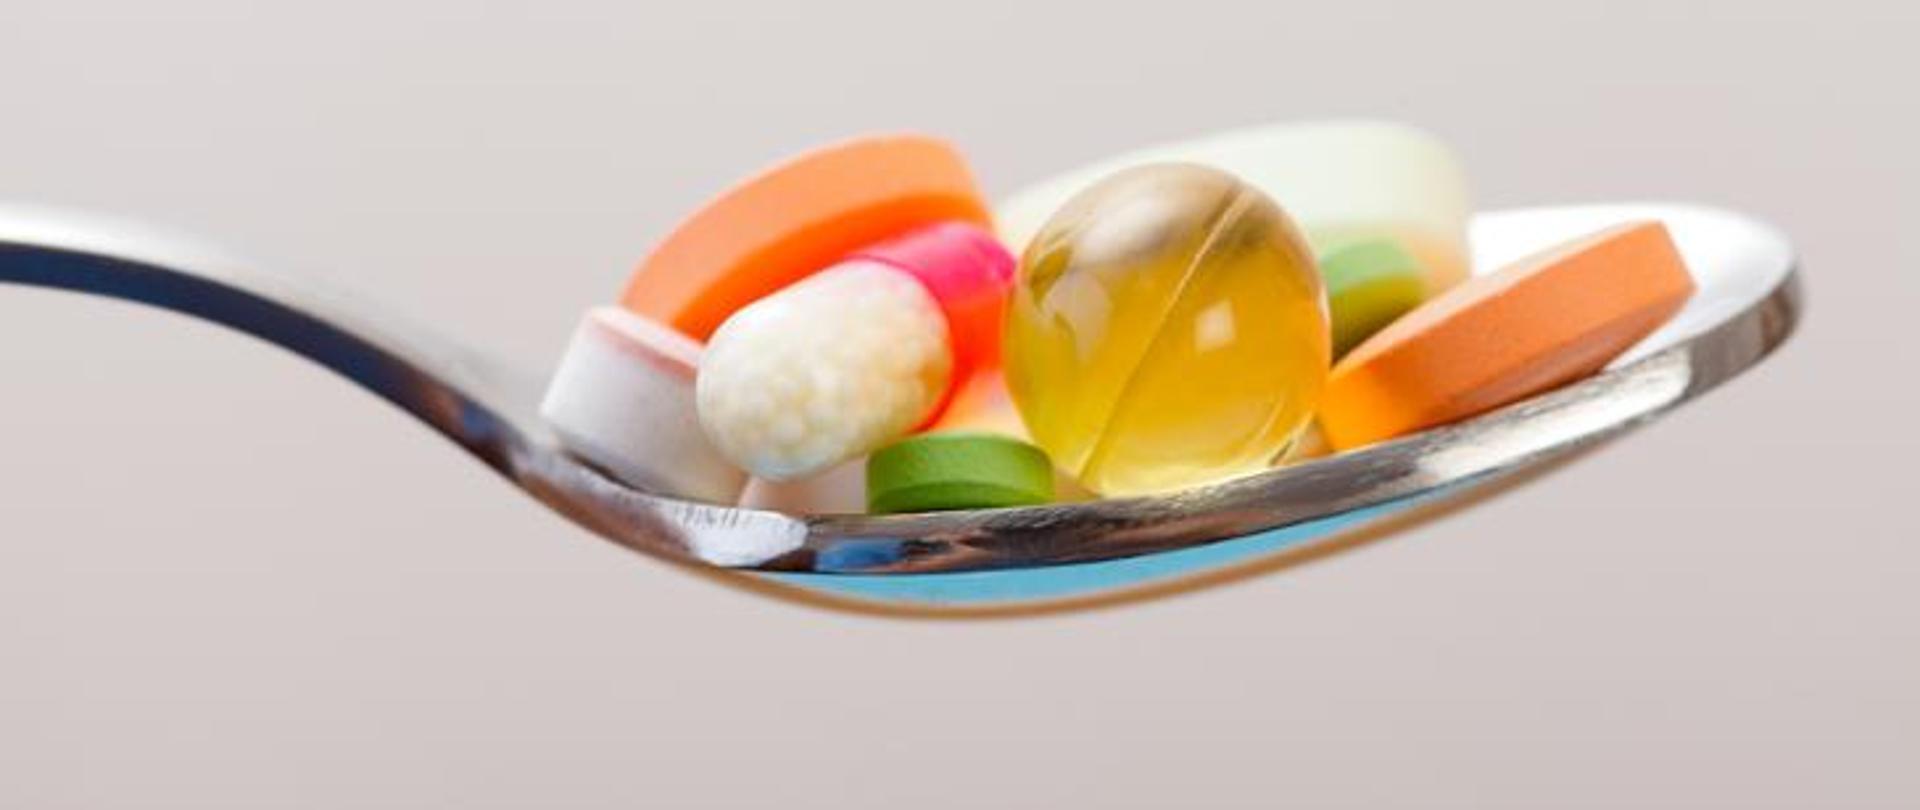 Zdjęcie przedstawia łyżkę stołową wypełnioną tabletkami, kapsułkami - suplementy diety